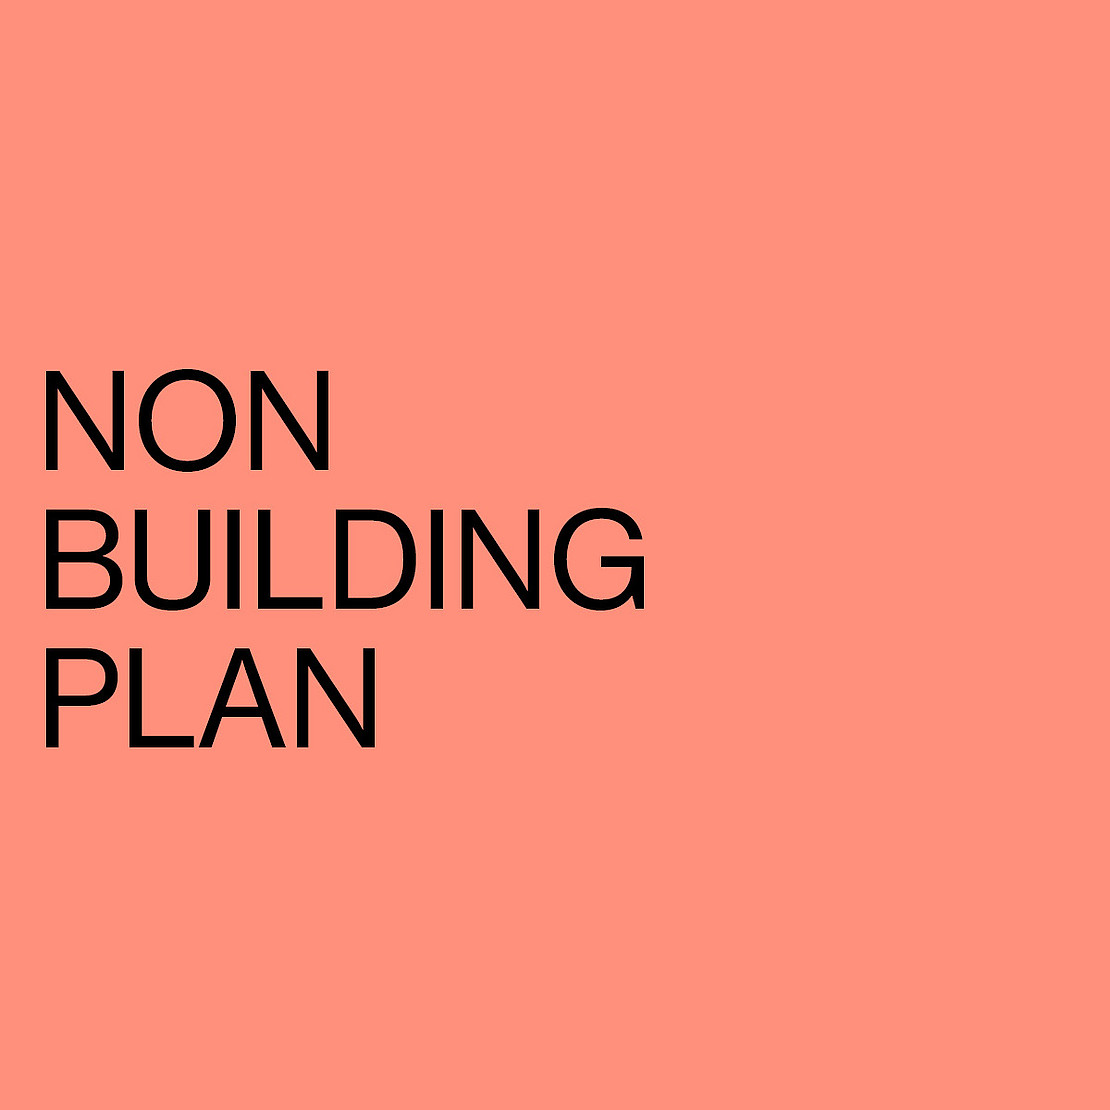 NON BUILDING PLAN